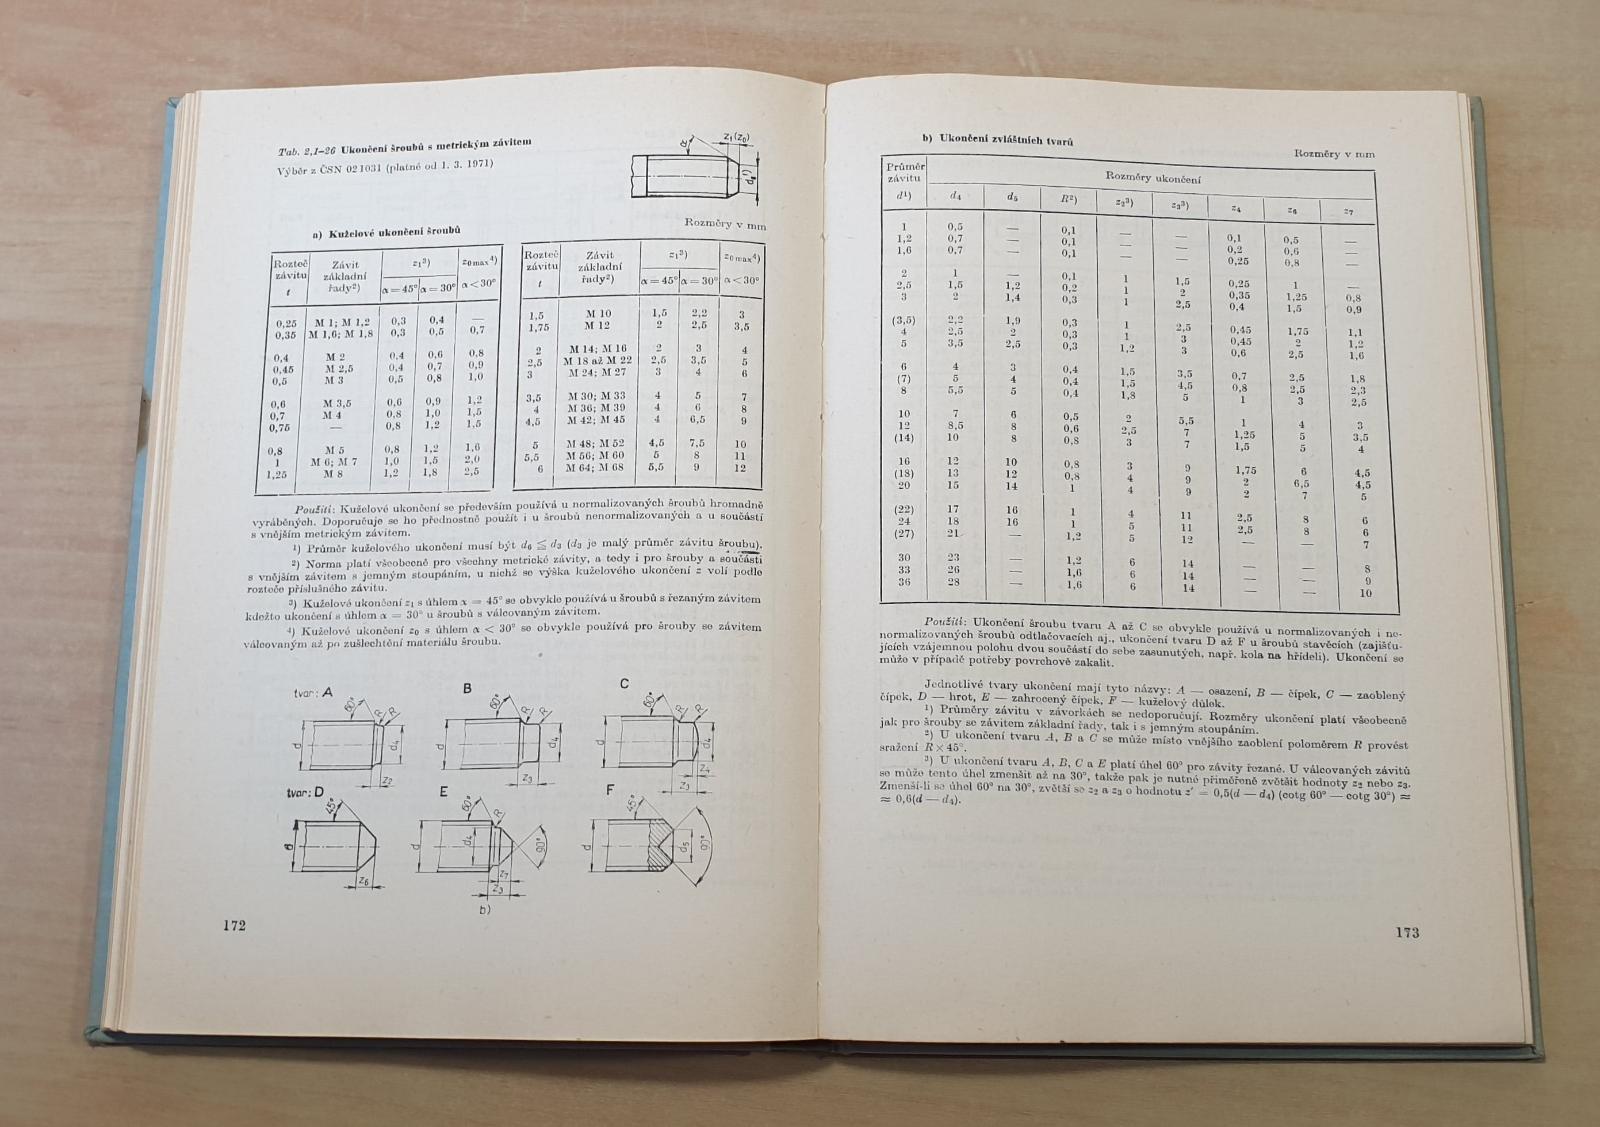 Technické tabuľky 1977 - Knihy